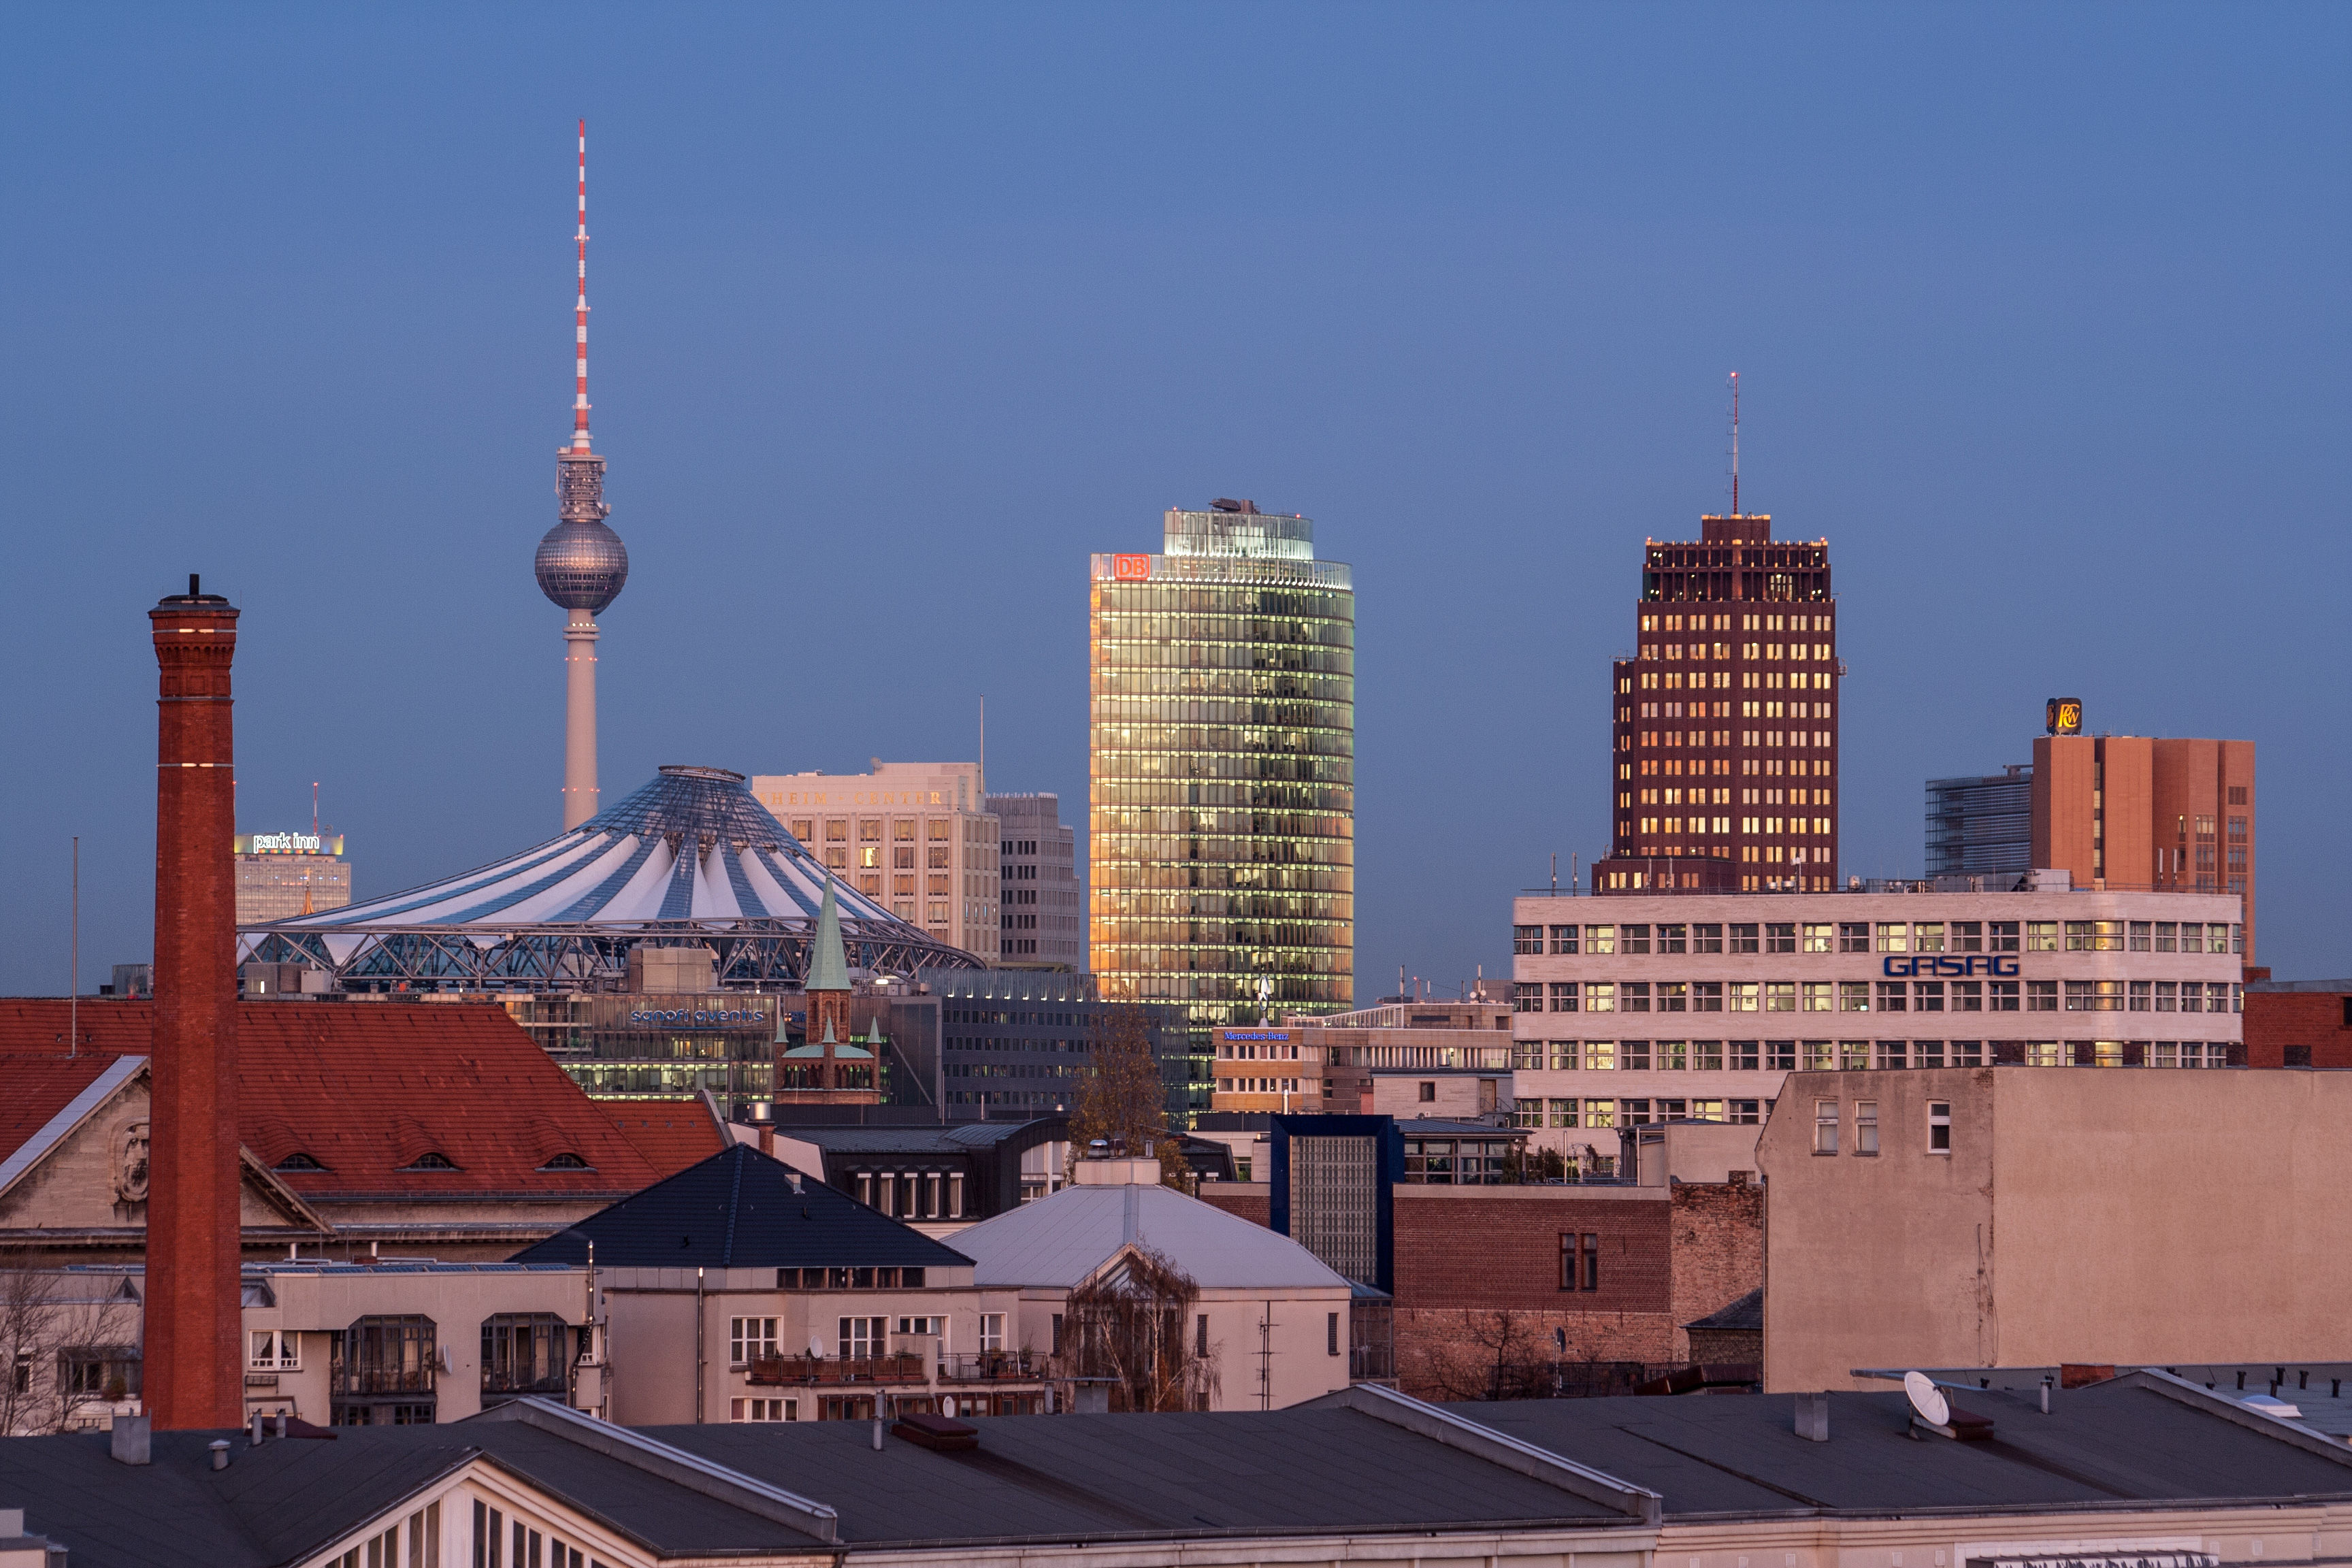 File:Berlin potsdamer platz.jpg - Wikimedia Commons